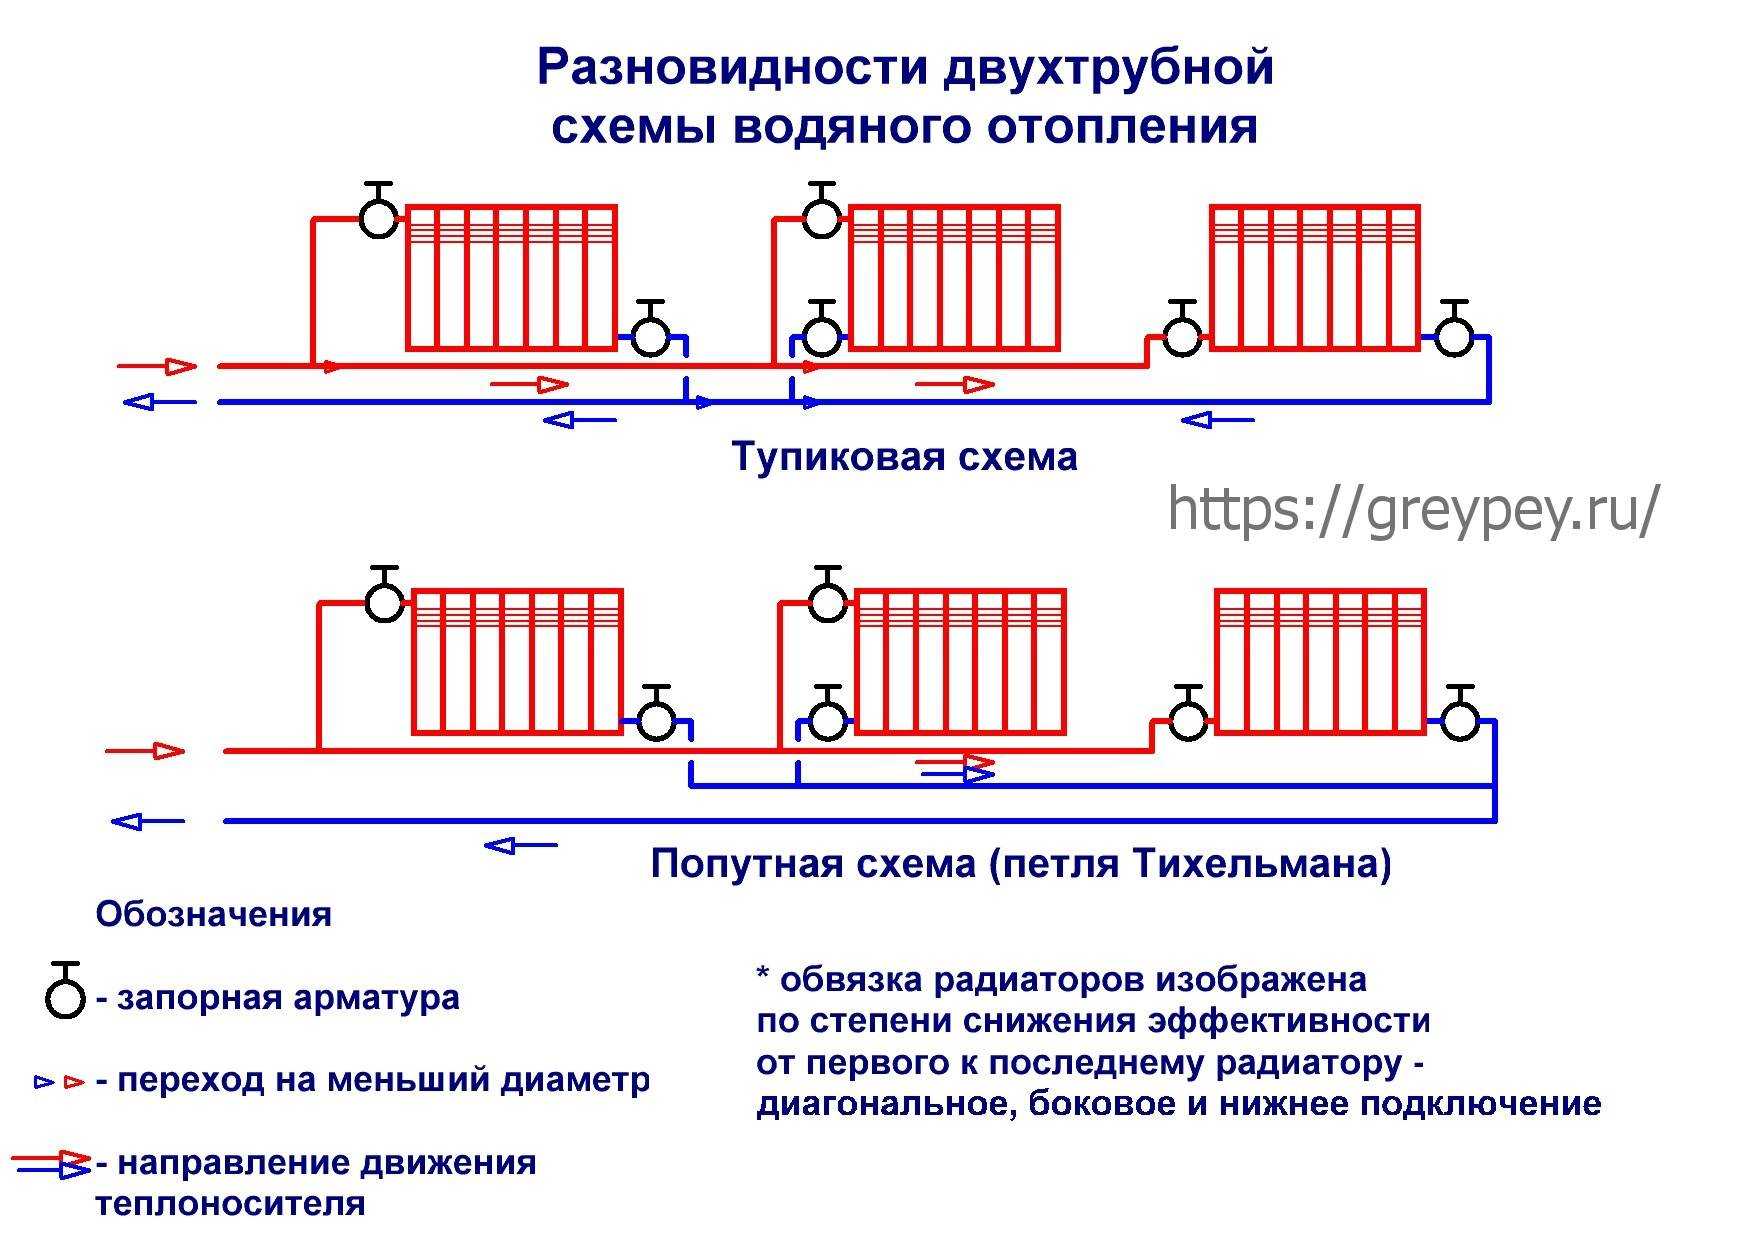 Однотрубная система отопления с принудительной циркуляцией принцип работы, схемы и порядок монтажа